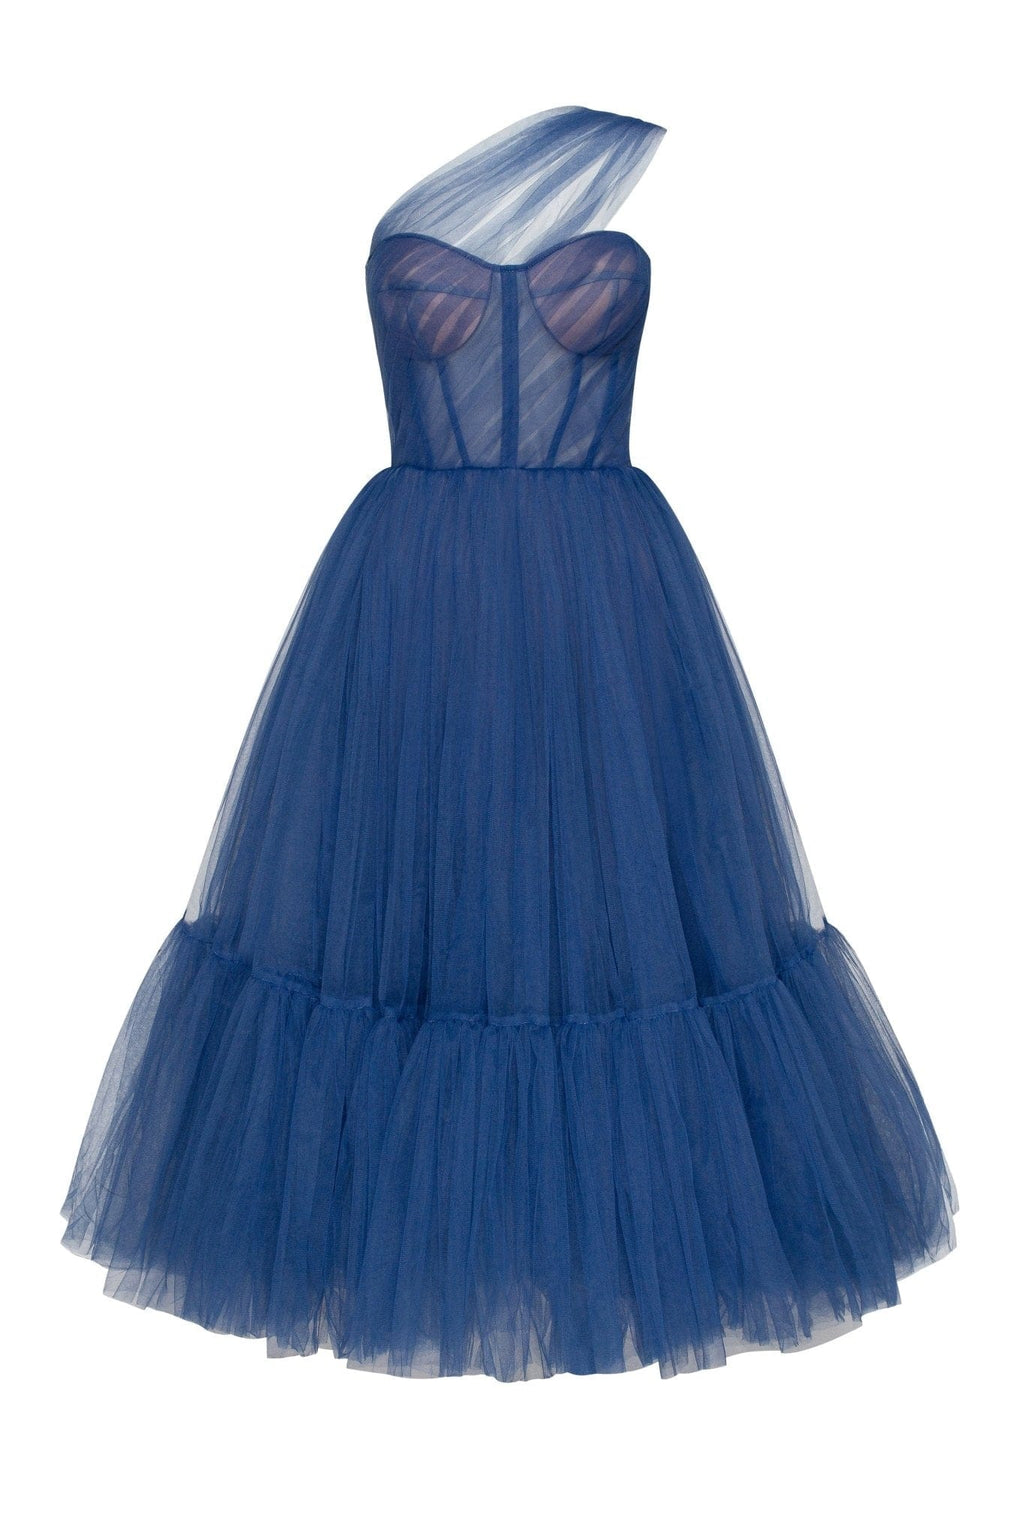 Blue One-Shoulder Cocktail Tulle Dress - Milla